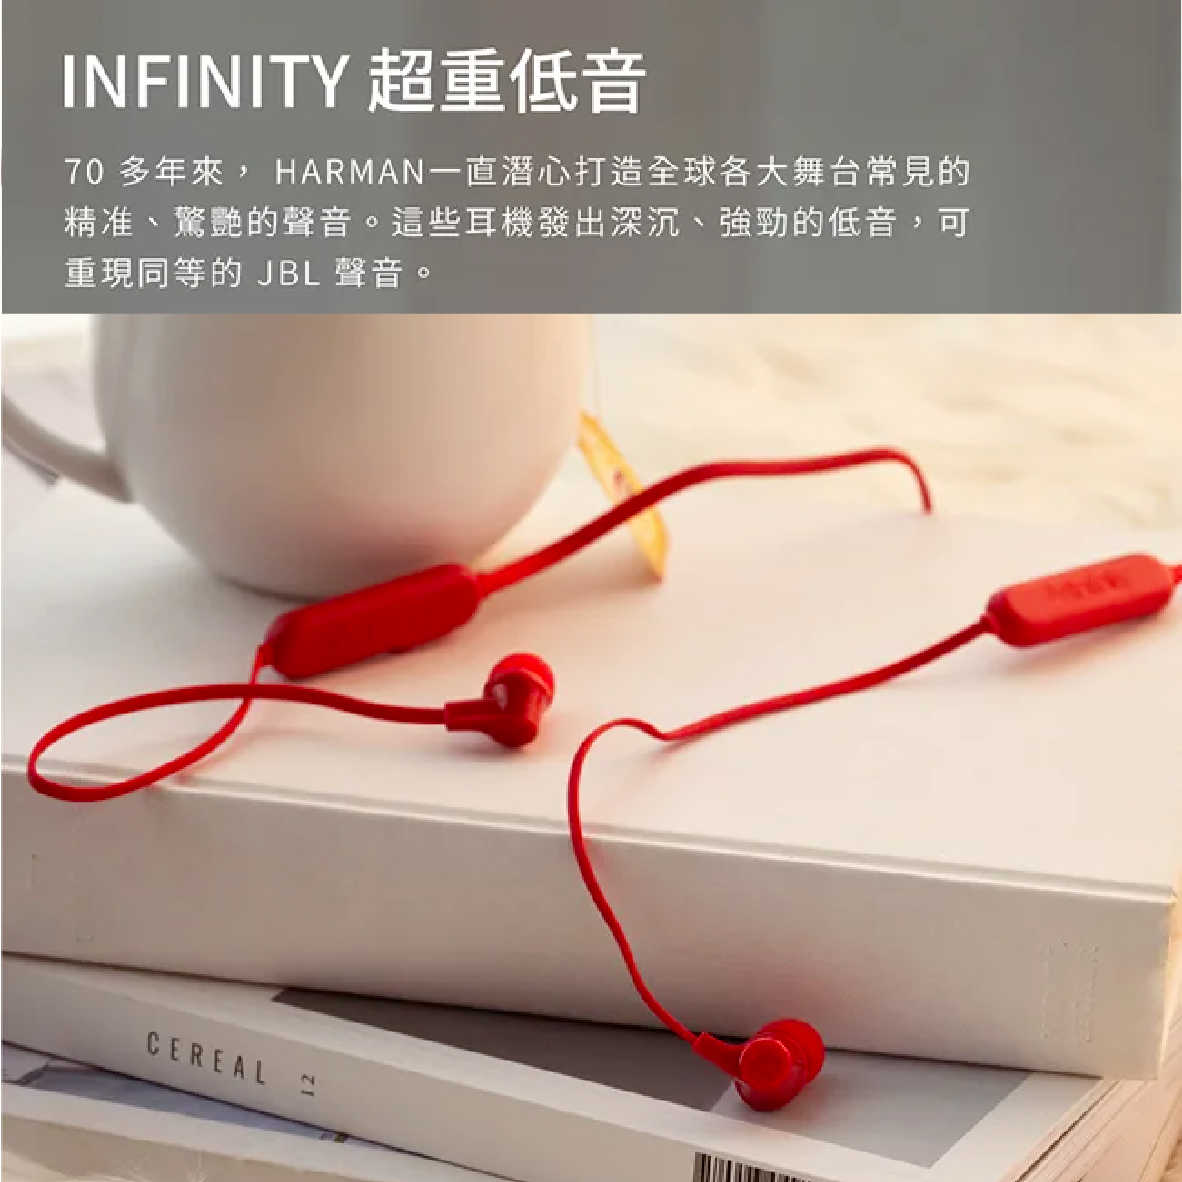 Infinity Tranz 300 紅色 IN-EAR系列 IPX5 磁吸式 無線 藍牙耳機 | 金曲音響